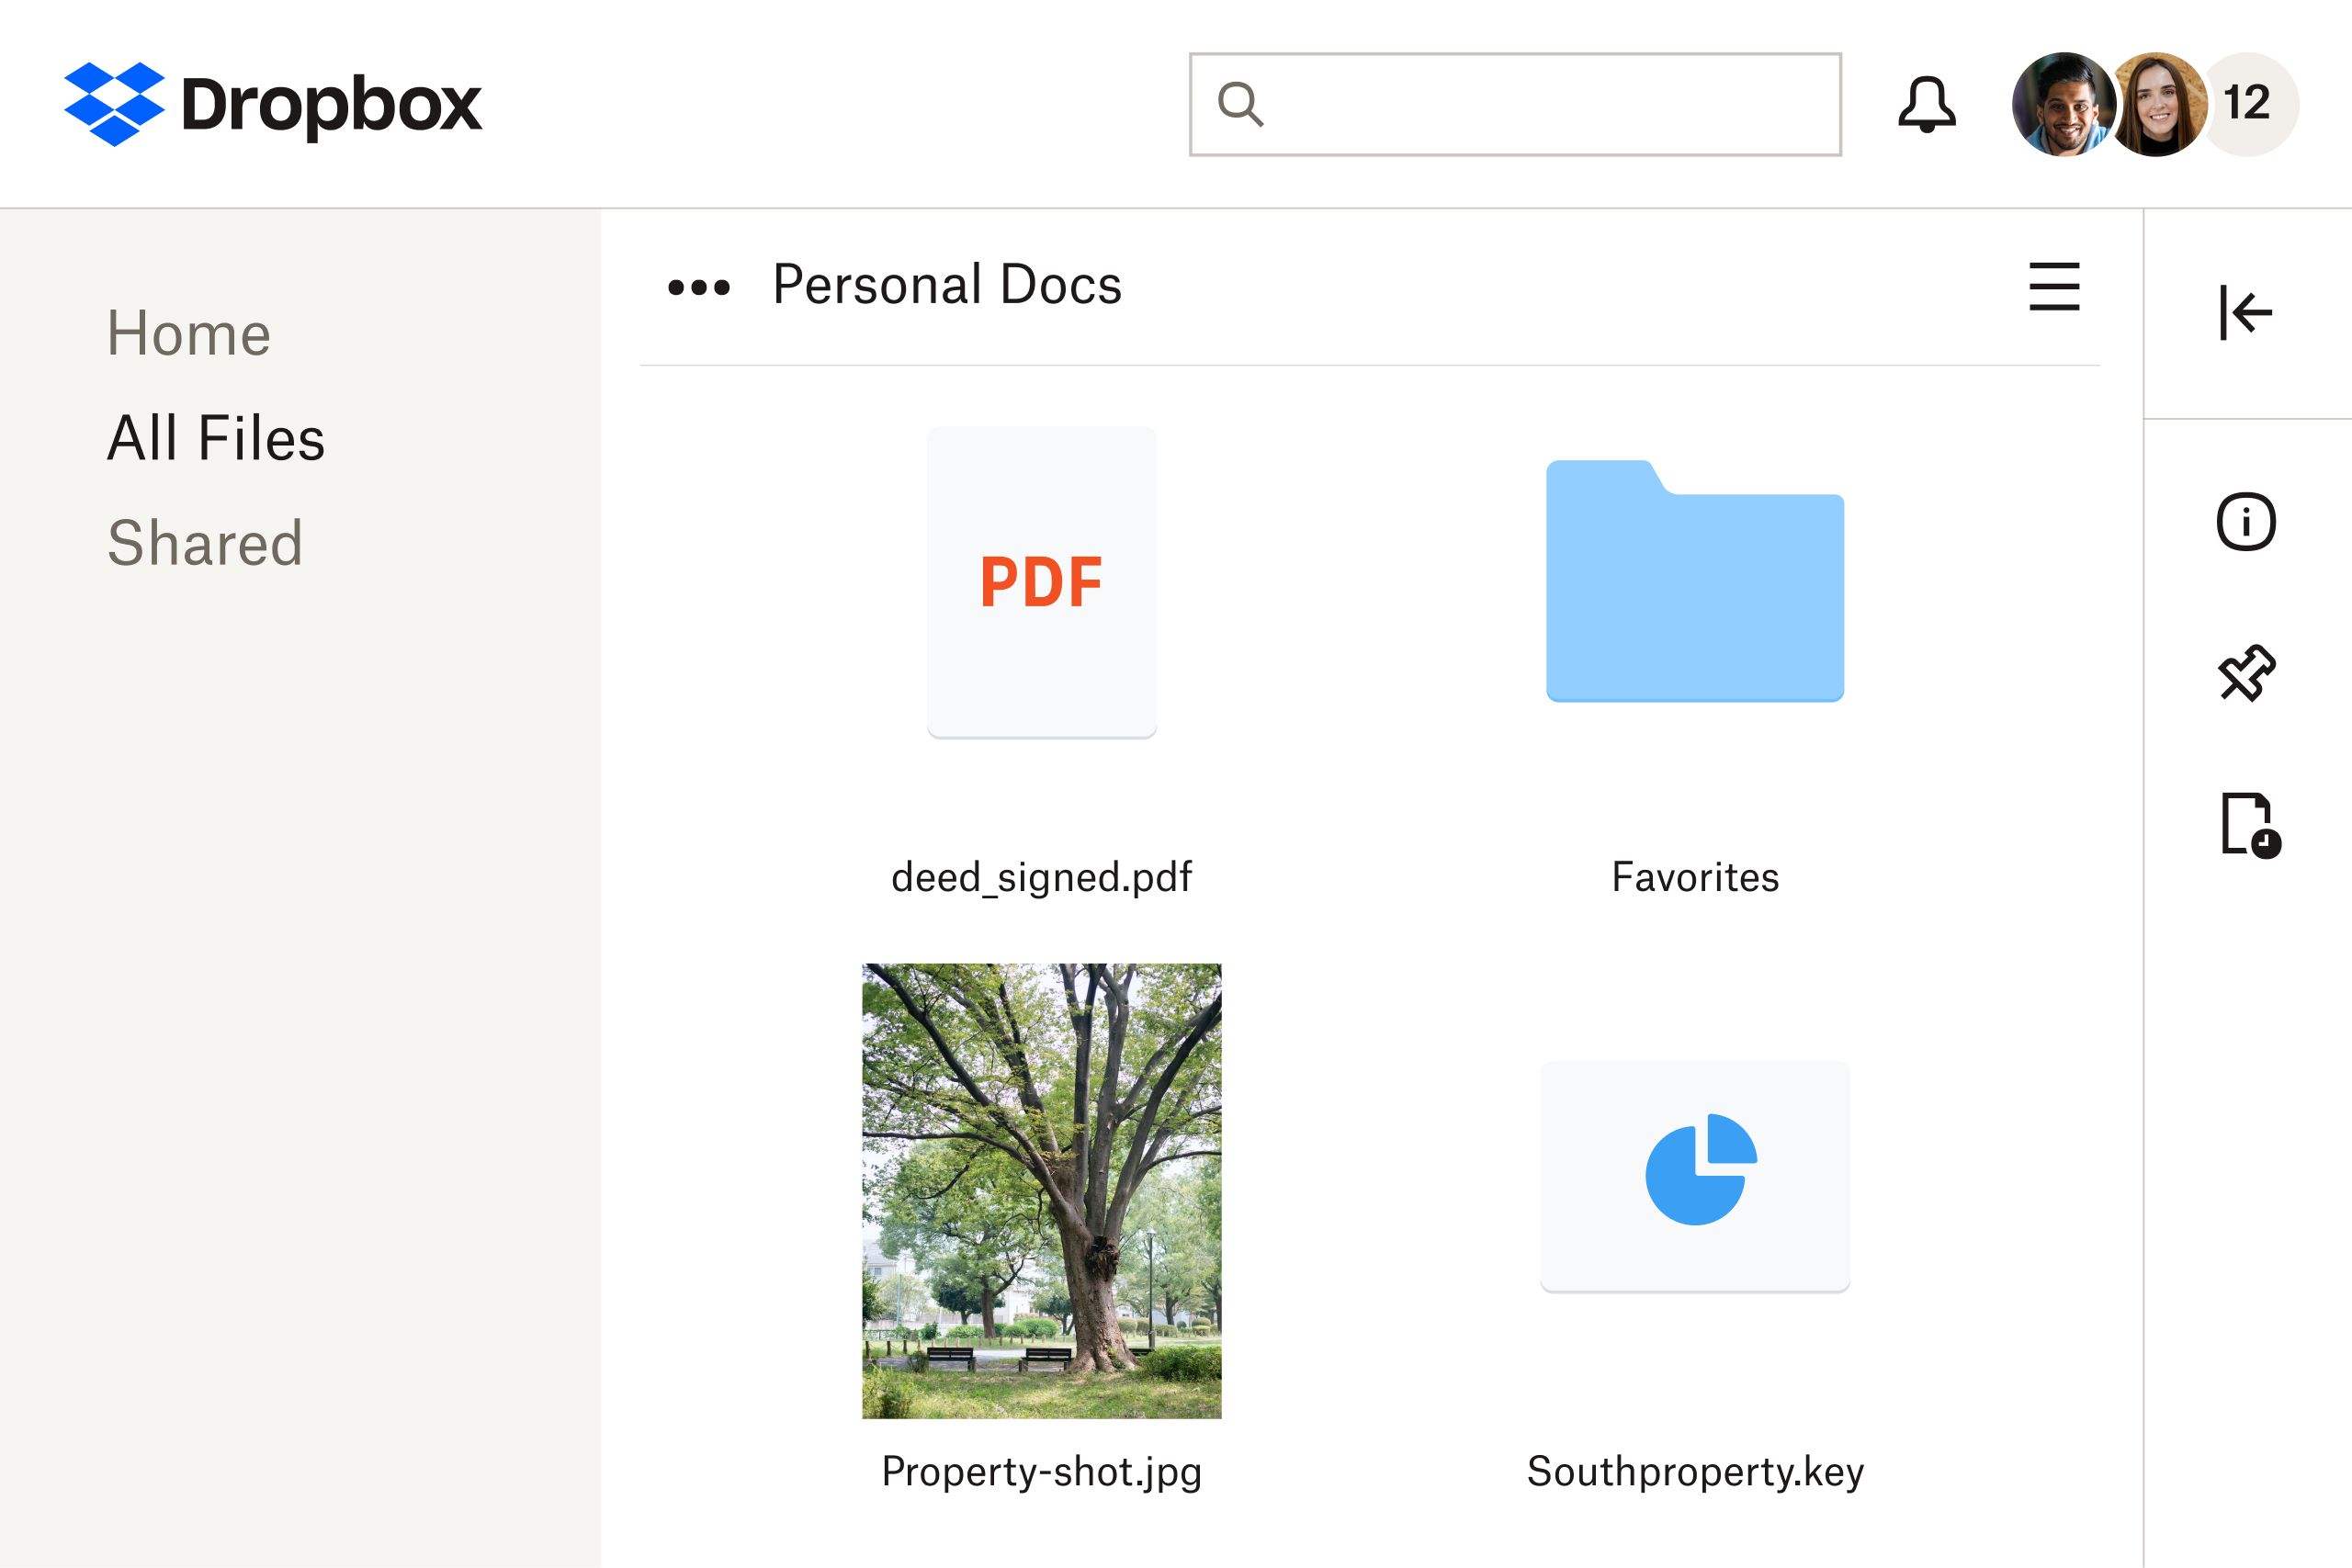 รูปภาพไฟล์ PDF ที่จัดเก็บไว้ในบริการพื้นที่จัดเก็บบนคลาวด์ของ Dropbox ซึ่งสามารถแก้ไขได้โดยใช้ Dropbox